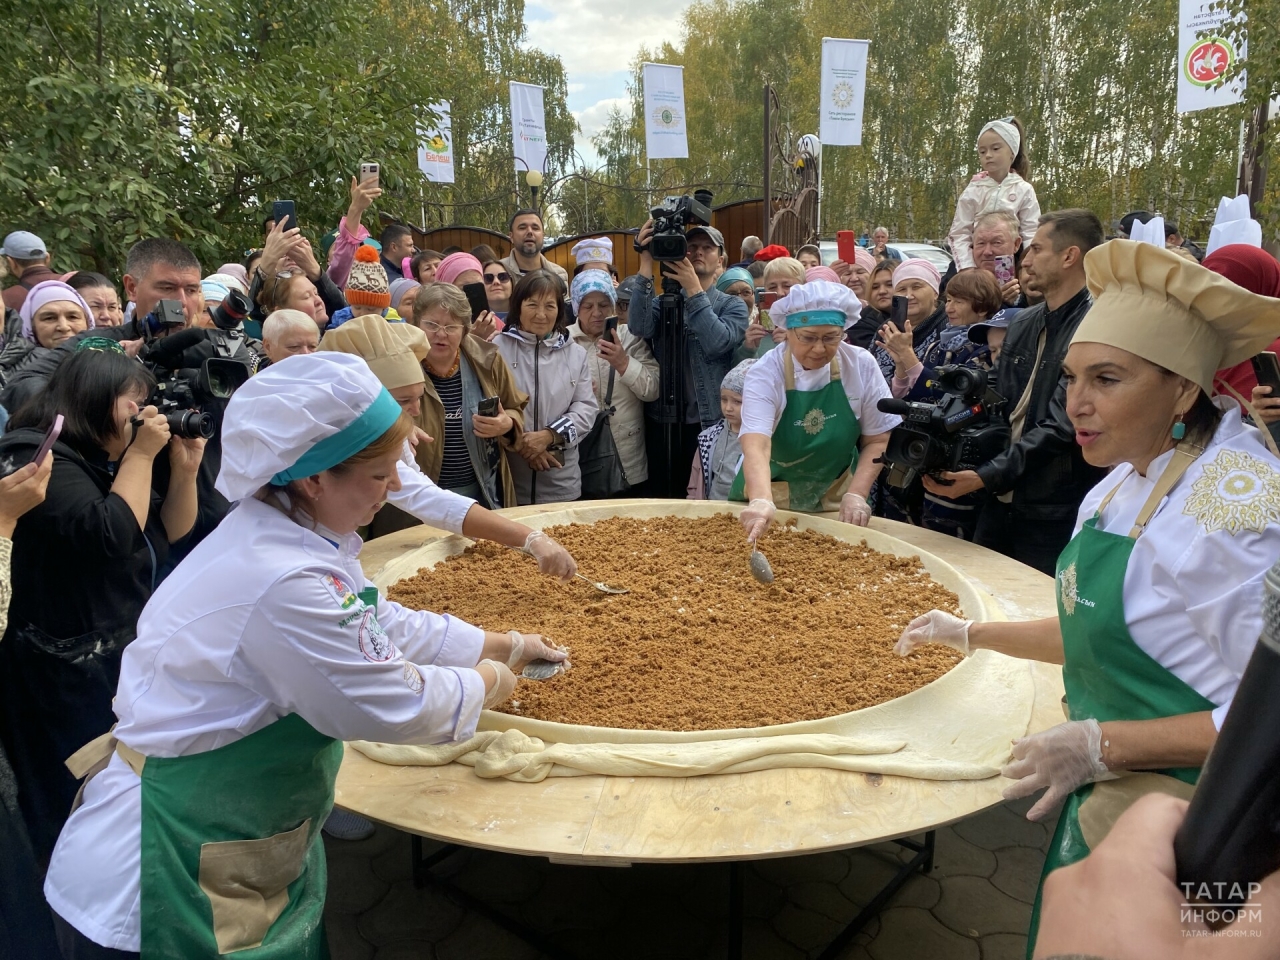 На гастрономическом фестивале в Казани испекли губадию рекордных размеров